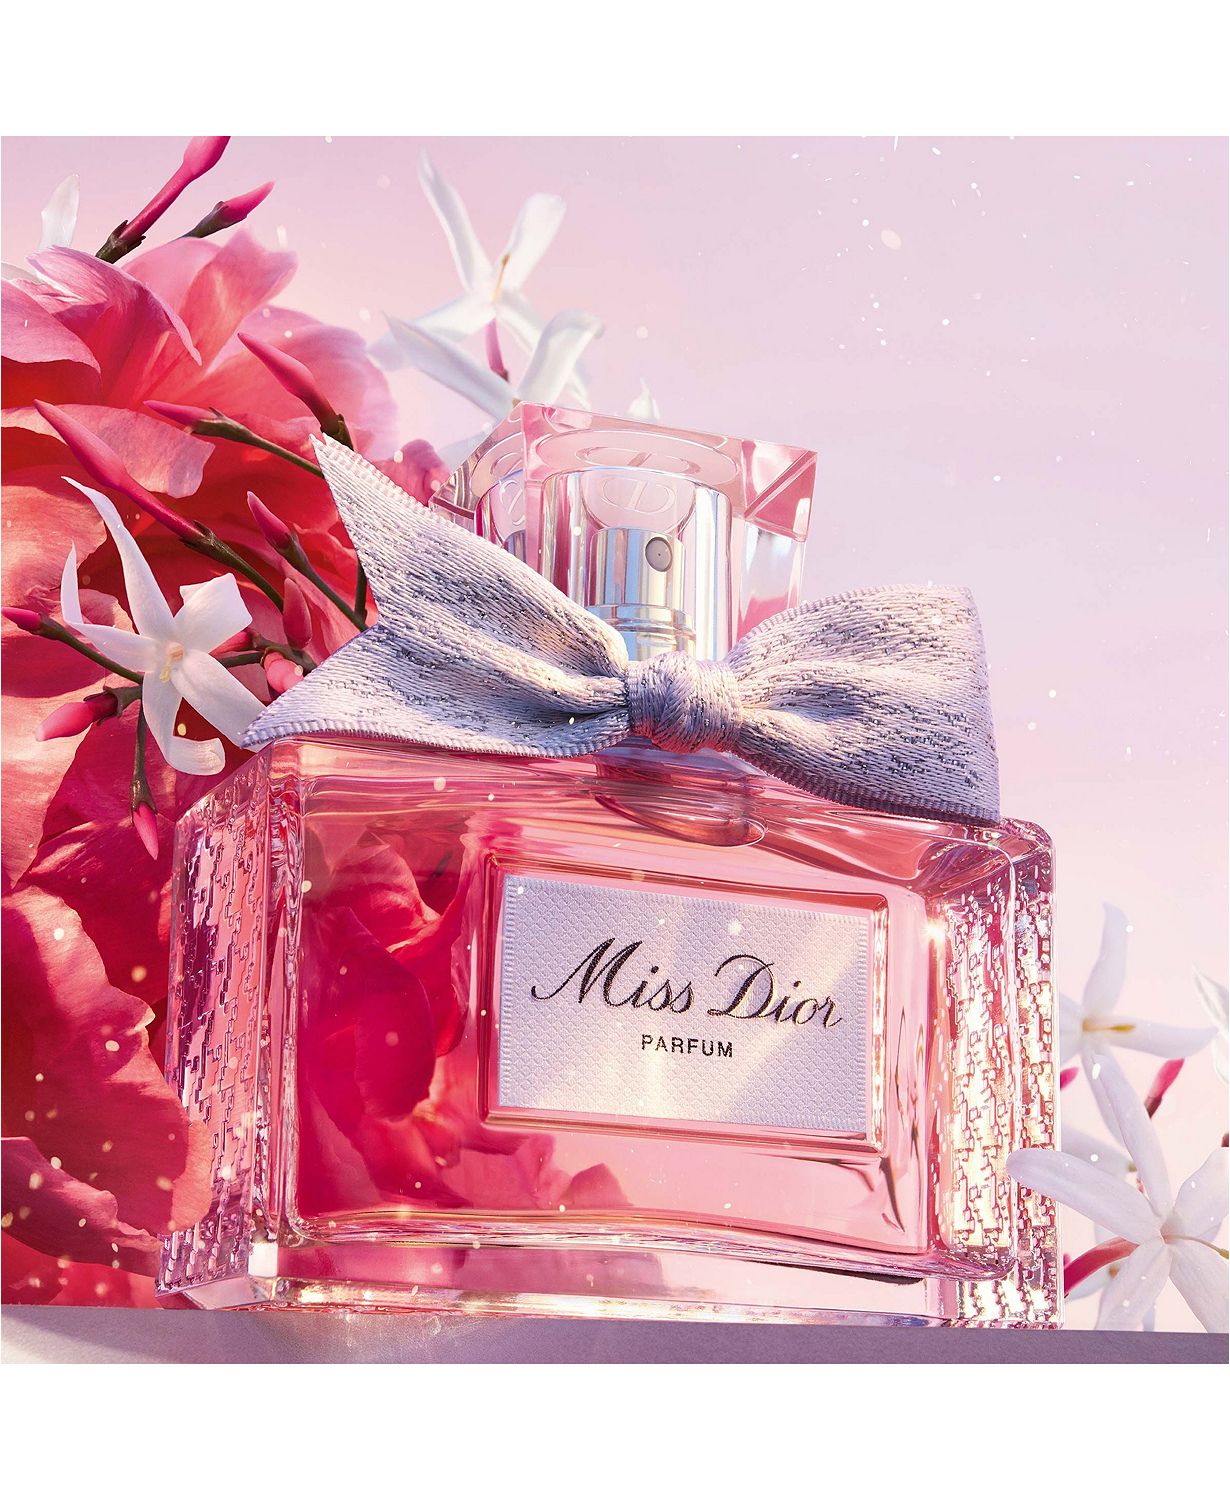 Miss Dior Parfum, 2.7 oz.